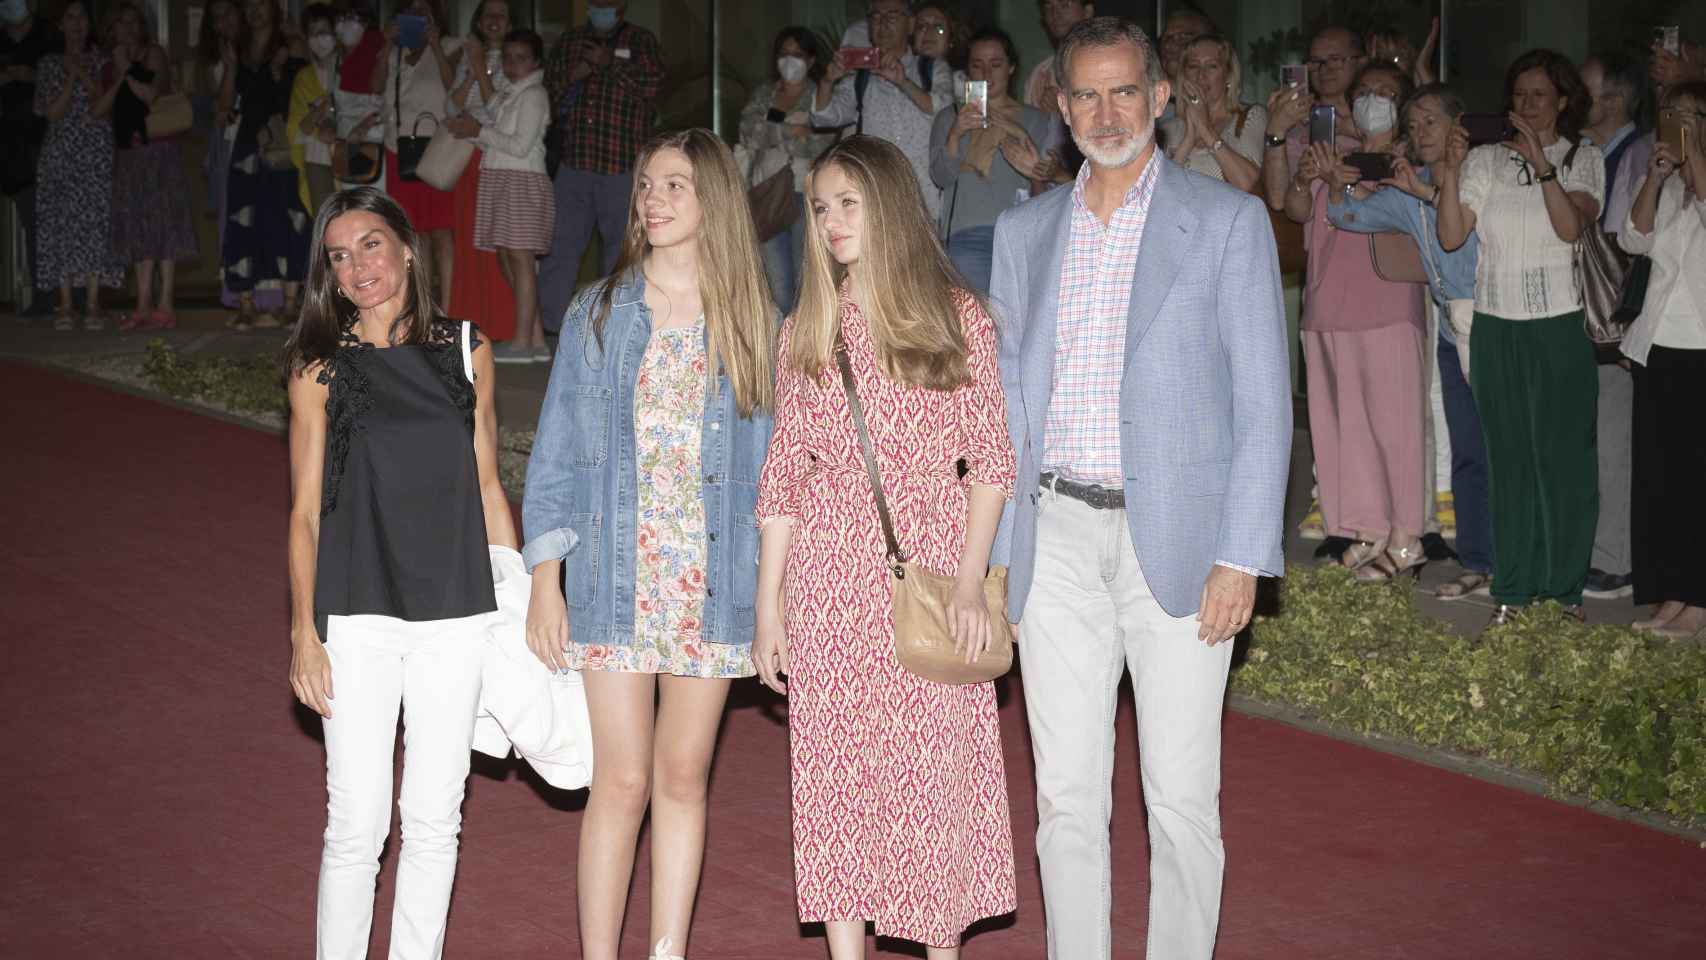 Los reyes de España, Felipe VI y Letizia, junto a sus hijas, Leonor y Sofía, saliendo de los Teatros del Canal, en Madrid, en la noche de este sábado 25 de junio de 2022.